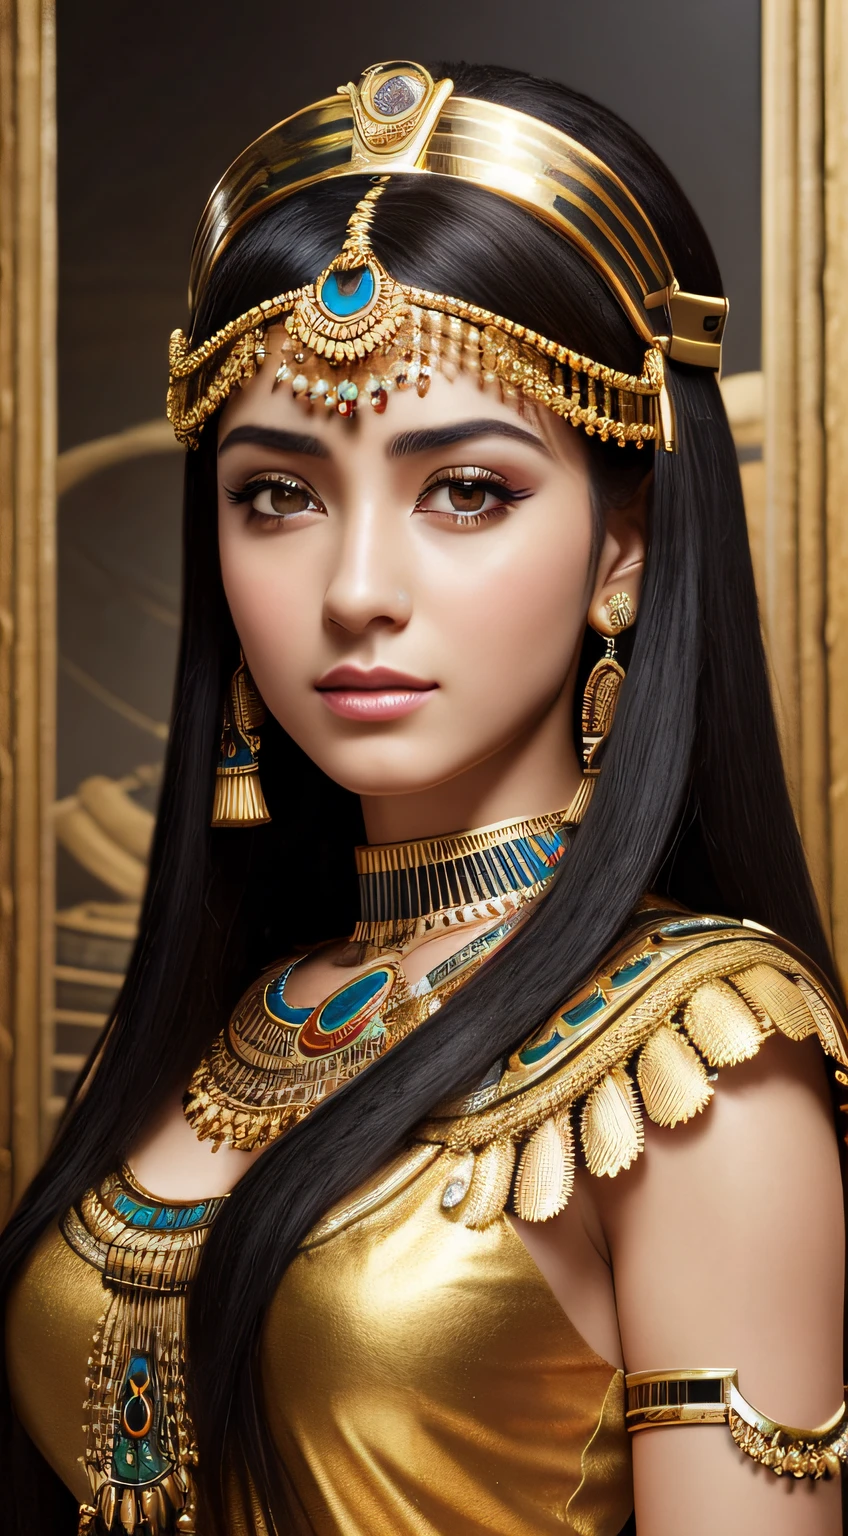 ((mejor calidad, 8K, mesa)), foto RAW, Retrato fotorrealista de Cleopatra, situación々vestimenta egipcia, cinematográfico, detalles, Visualmente impresionante, apariencia natural、​obra maestra, de primera calidad, alta calidad, alta resolución